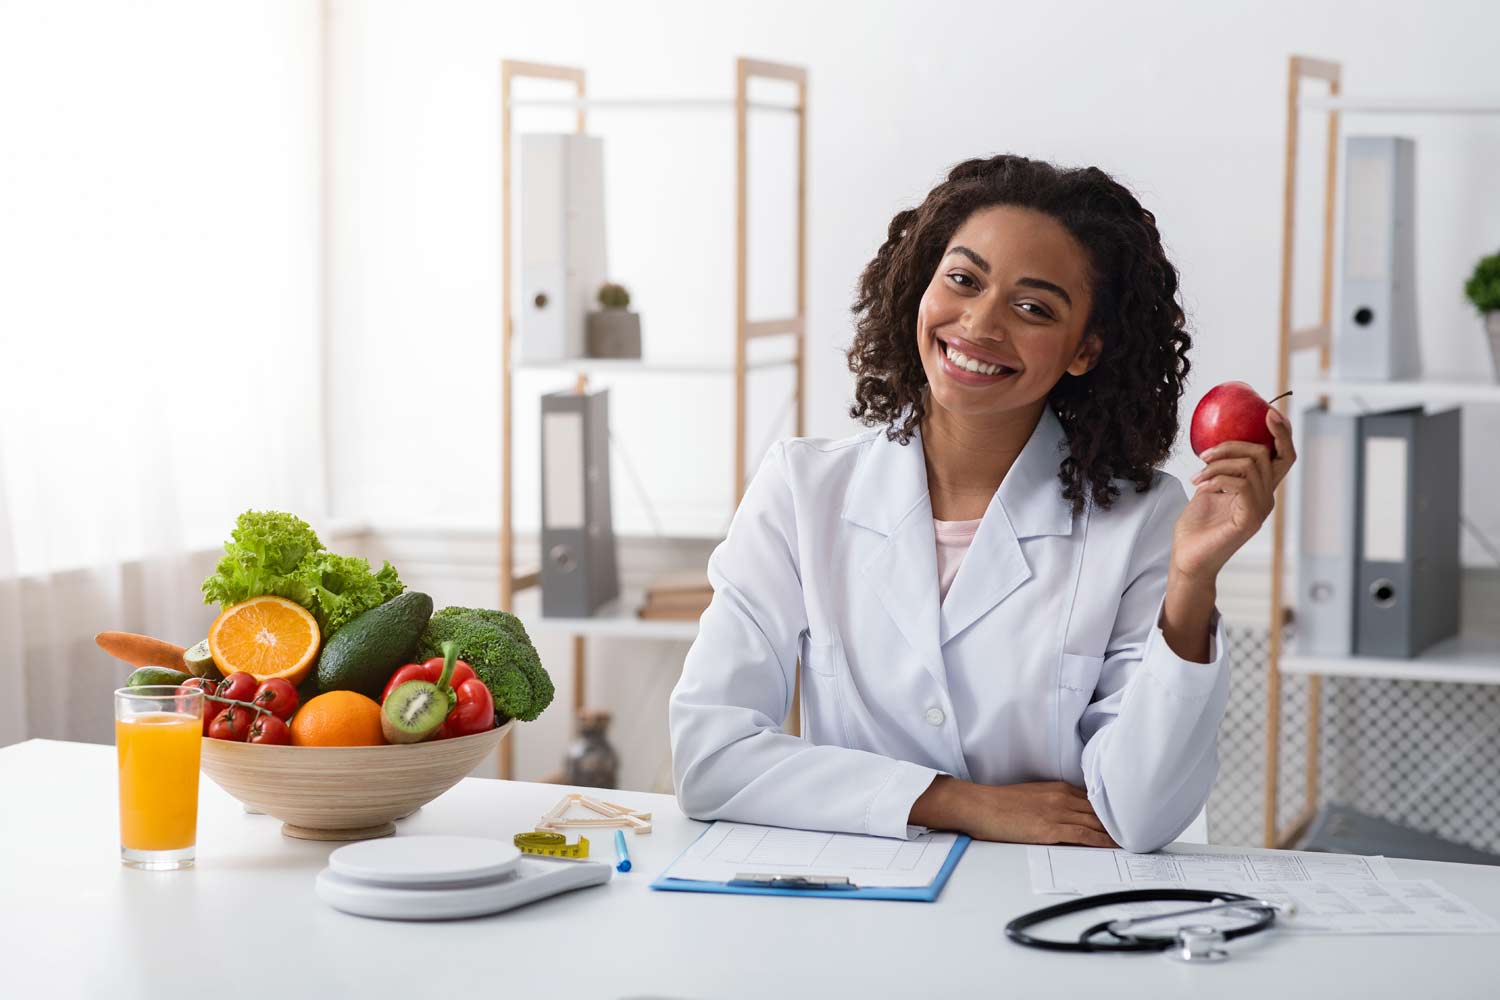 מדענית או רופאה בחלוק לבן ליד שולחן ועליו קערה עם פירות וירקות